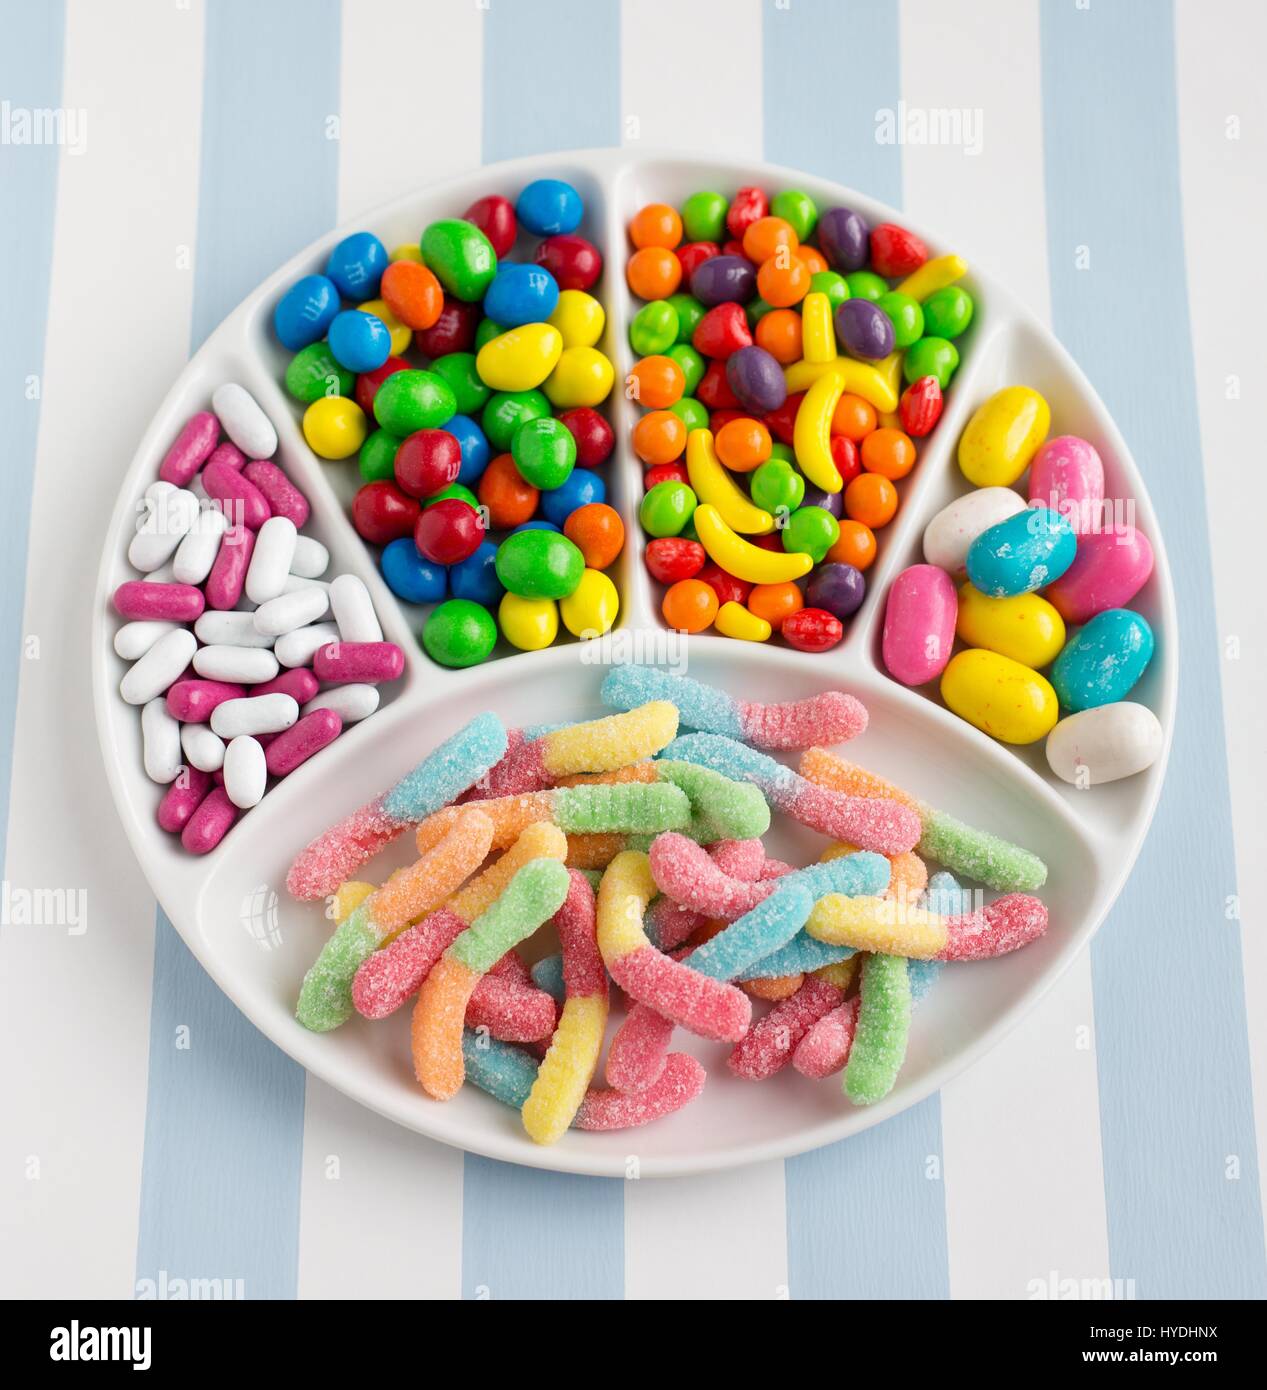 Différentes variétés de bonbons sur une assiette. Banque D'Images